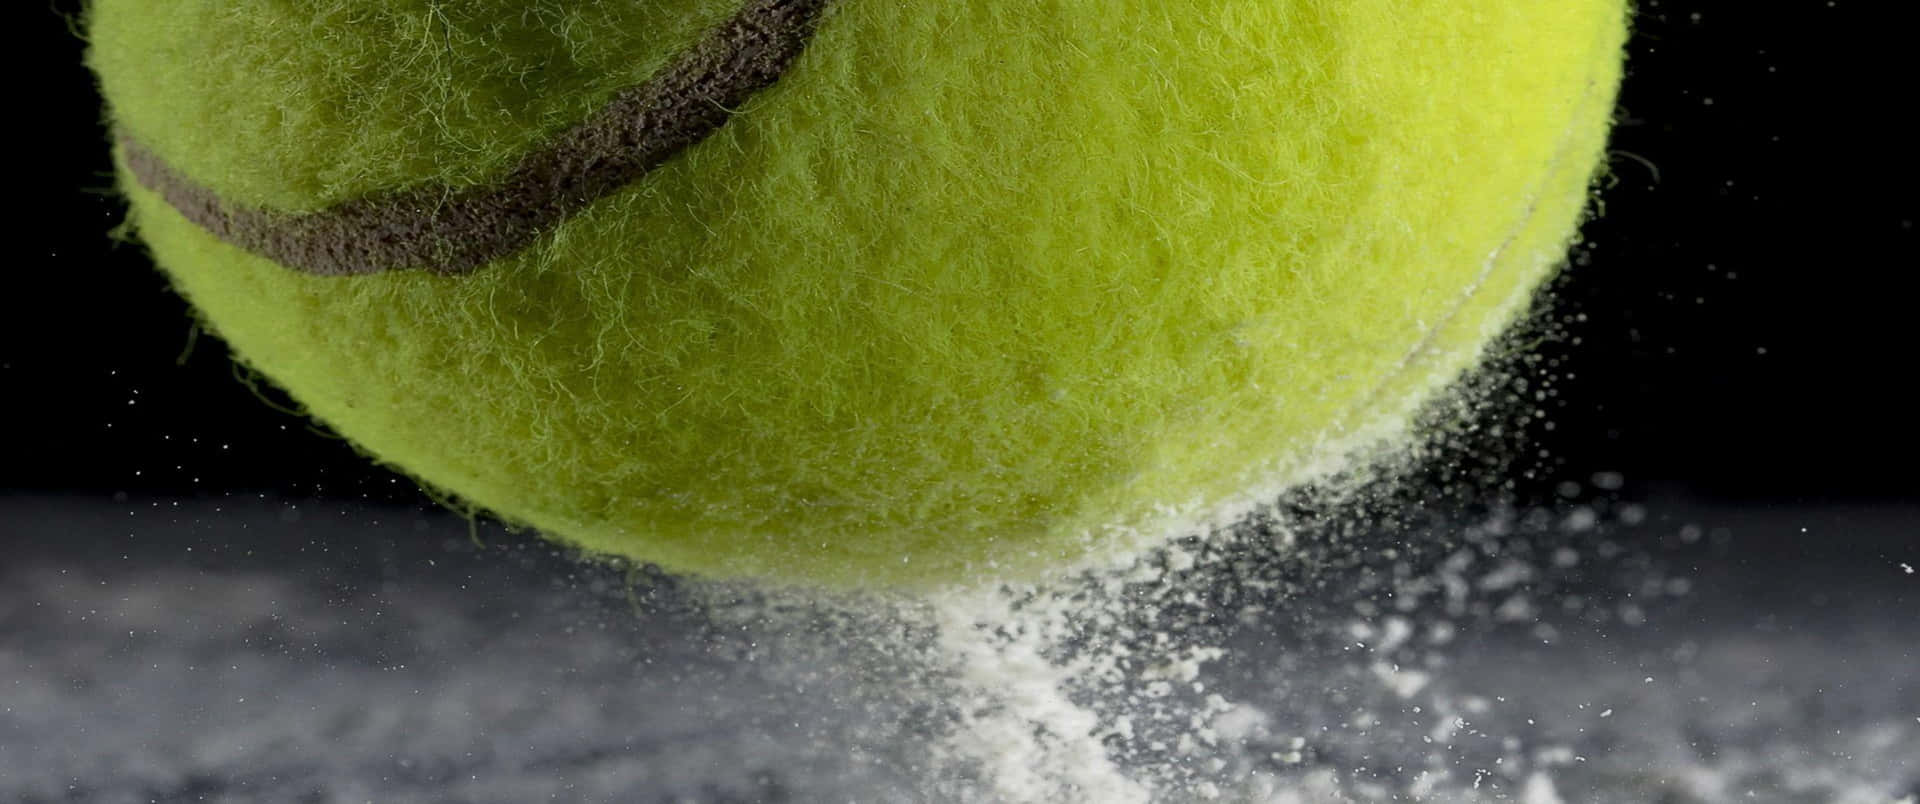 Unapallina Da Tennis Viene Lanciata In Una Nuvola Di Polvere